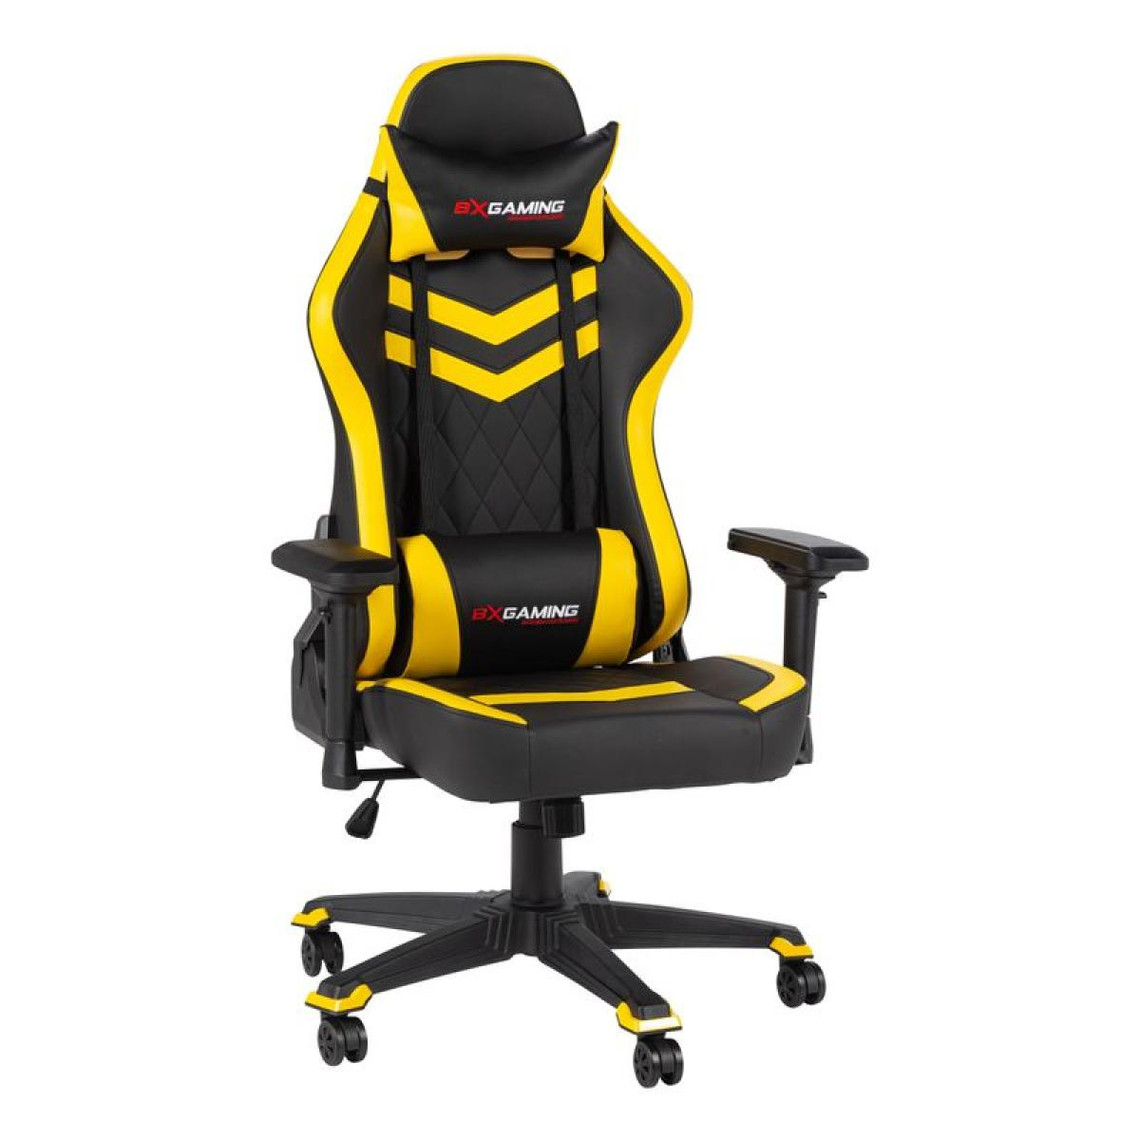 Sièges et fauteuils de bureau Bxgaming Fauteuil de bureau gamer ACID noir et jaune